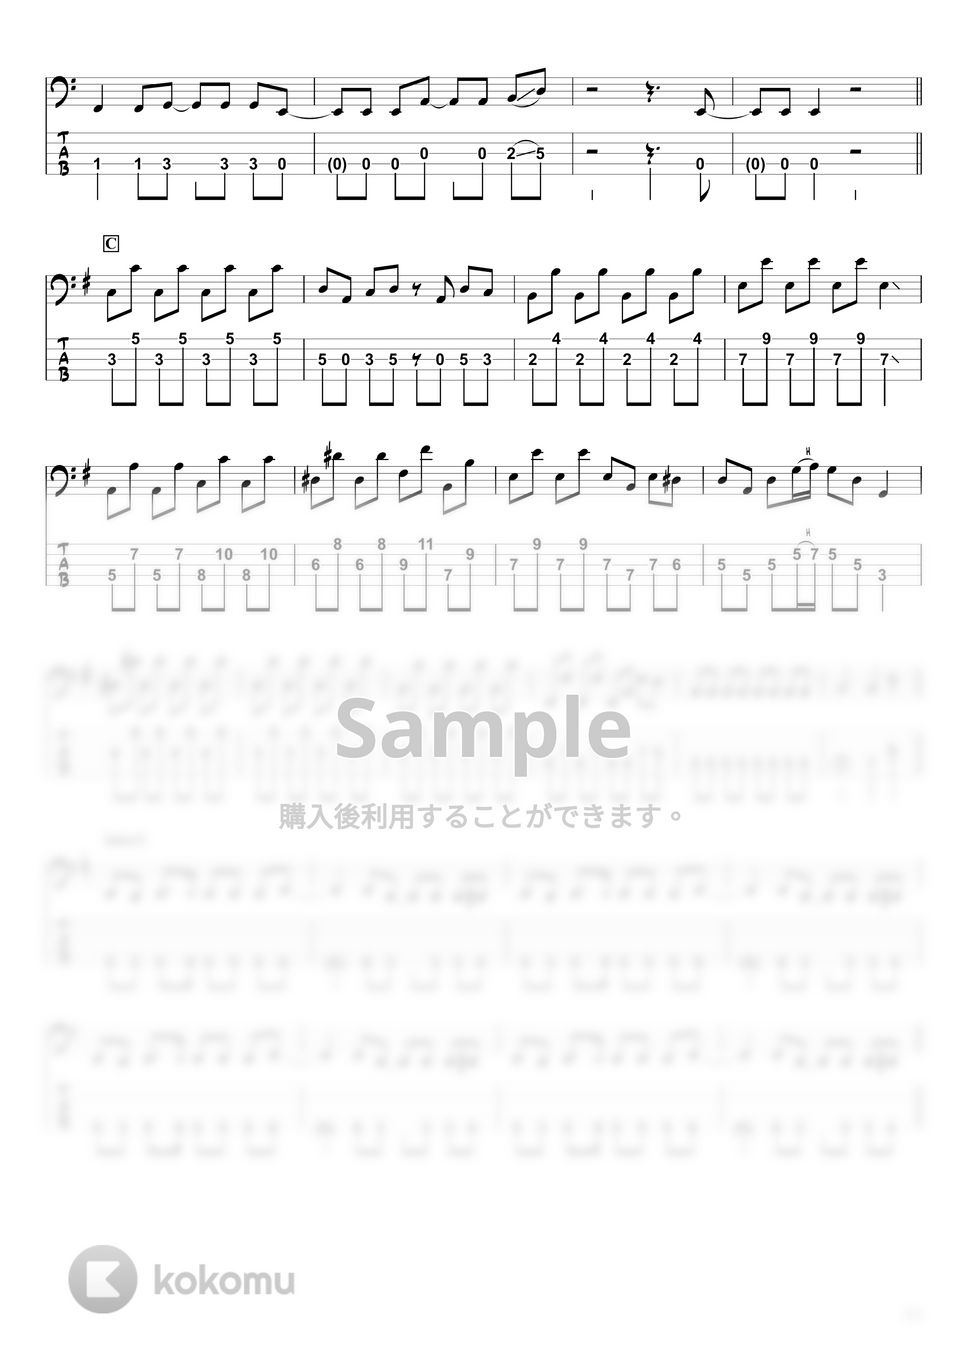 YOASOBI - 祝福 (ベースTAB譜☆5弦ベース対応) by swbass